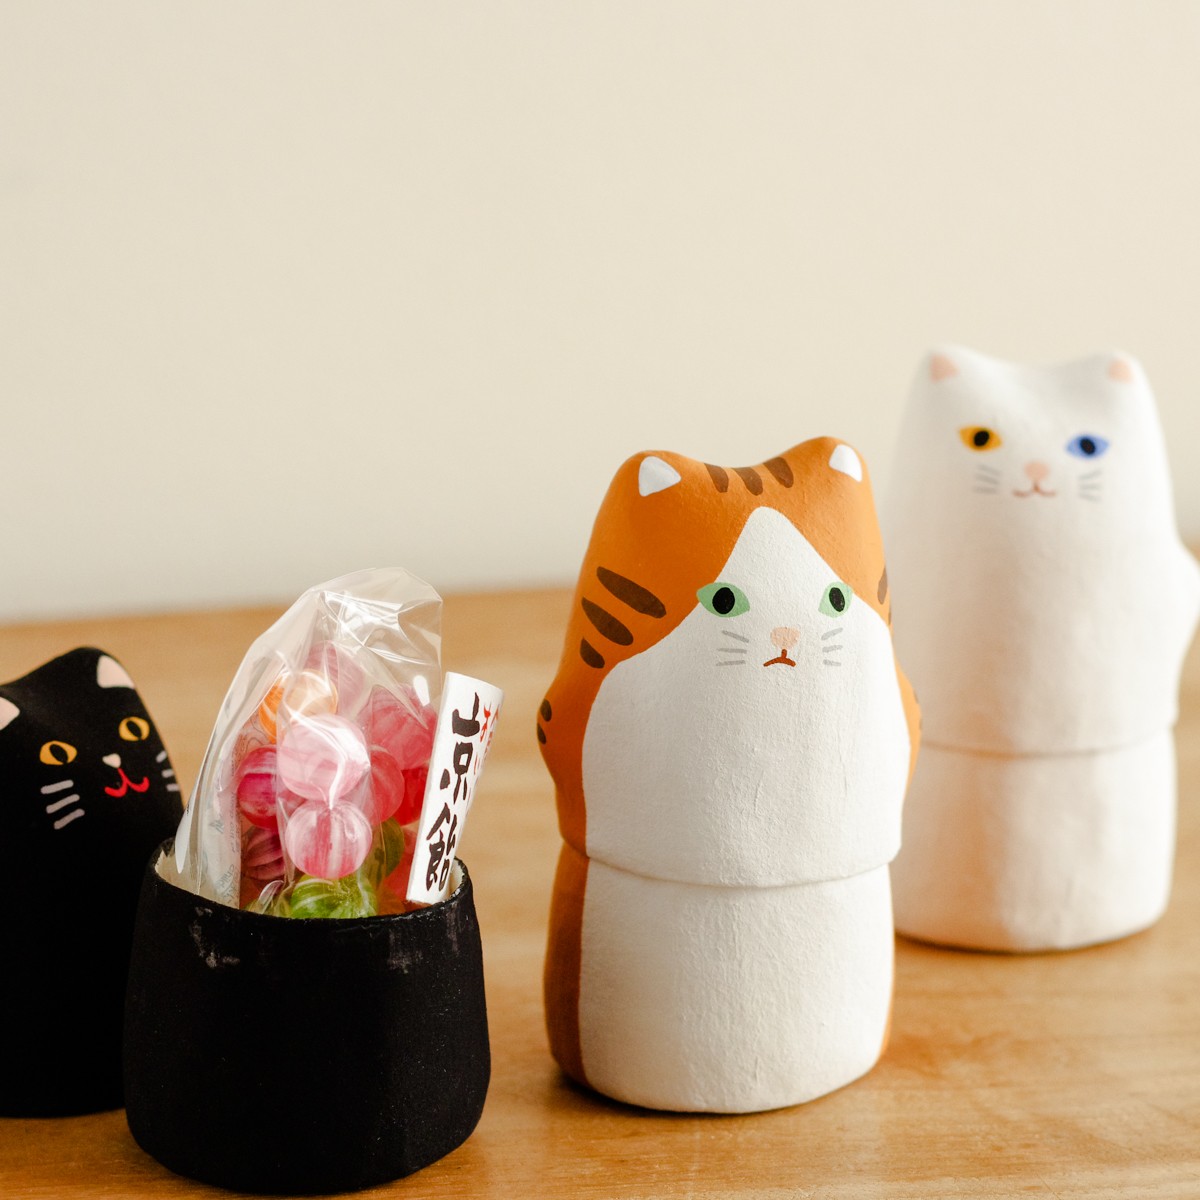 日本製【羅工房】京都の手描きはりこどーる猫シリーズ 京飴入り ホワイトデー